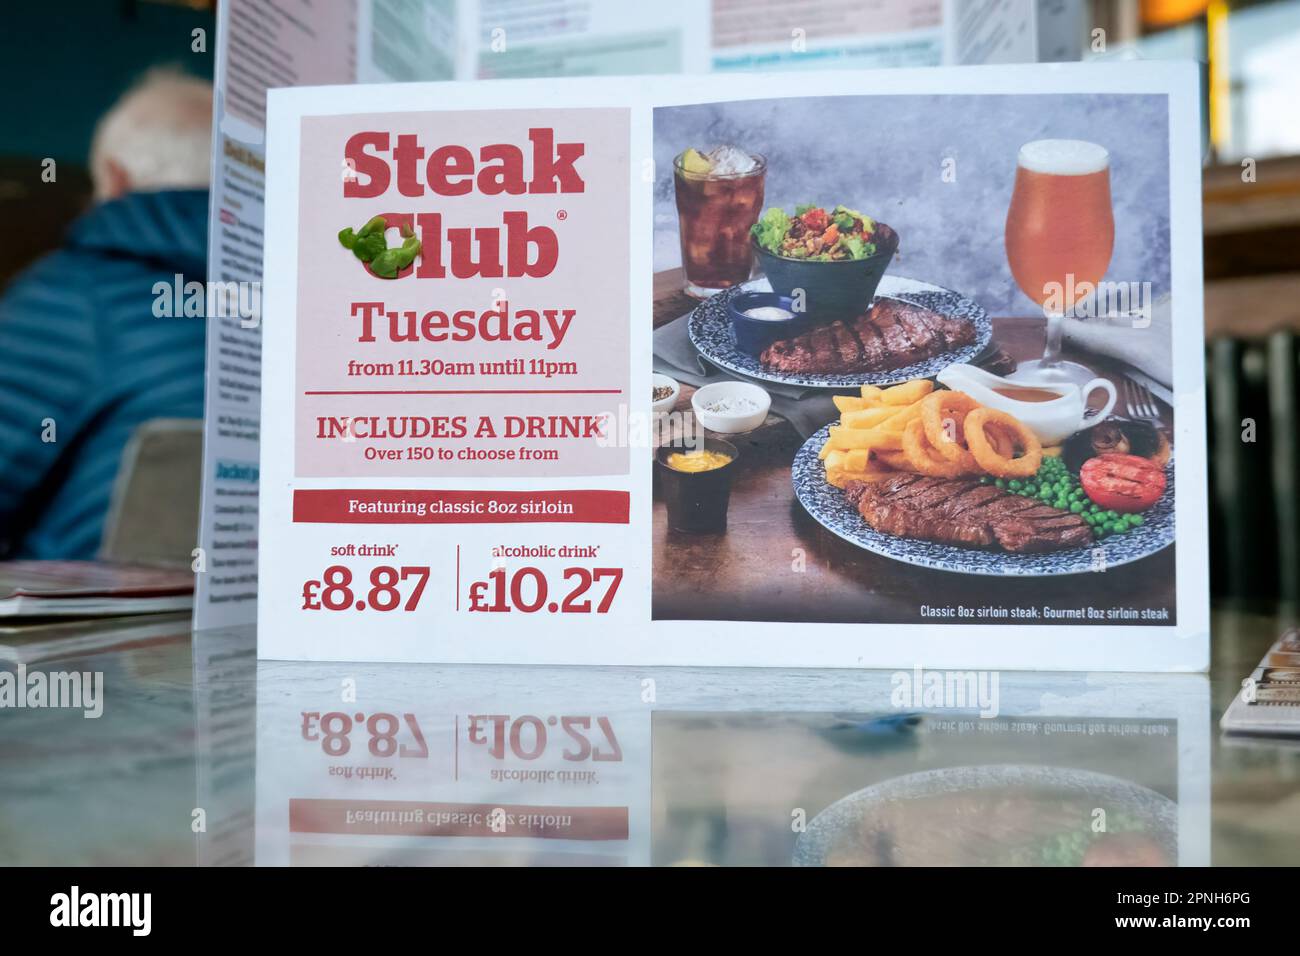 Eine Speisekarte aus einem JD Wetherspoons Pub. Die Karte zeigt die Preise des beliebten Steak Clubs, der jeden Dienstag im Pub verfügbar ist Stockfoto